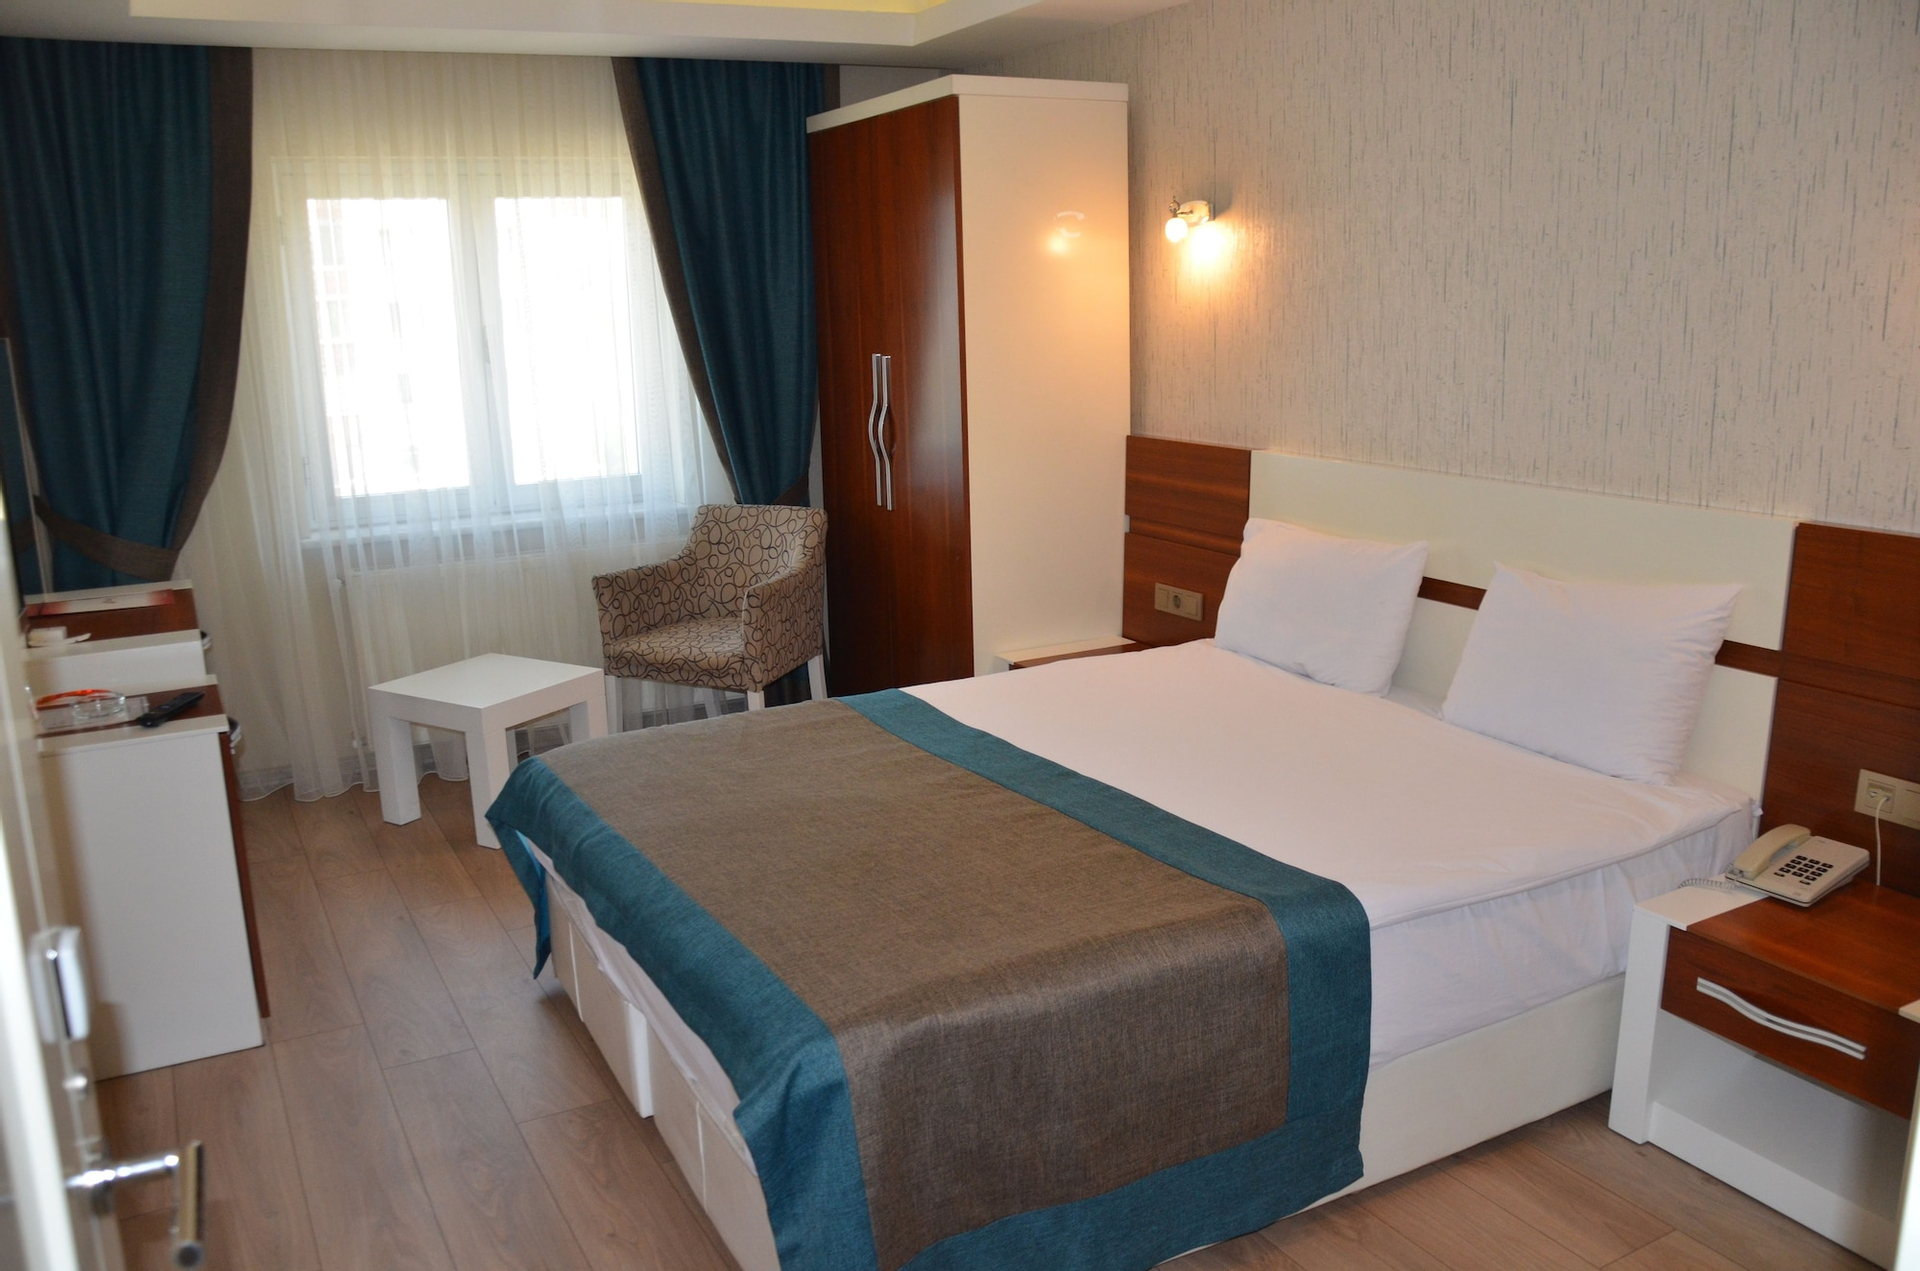 Bedroom 1, Grand Ahos Hotel & Spa, Ereğli